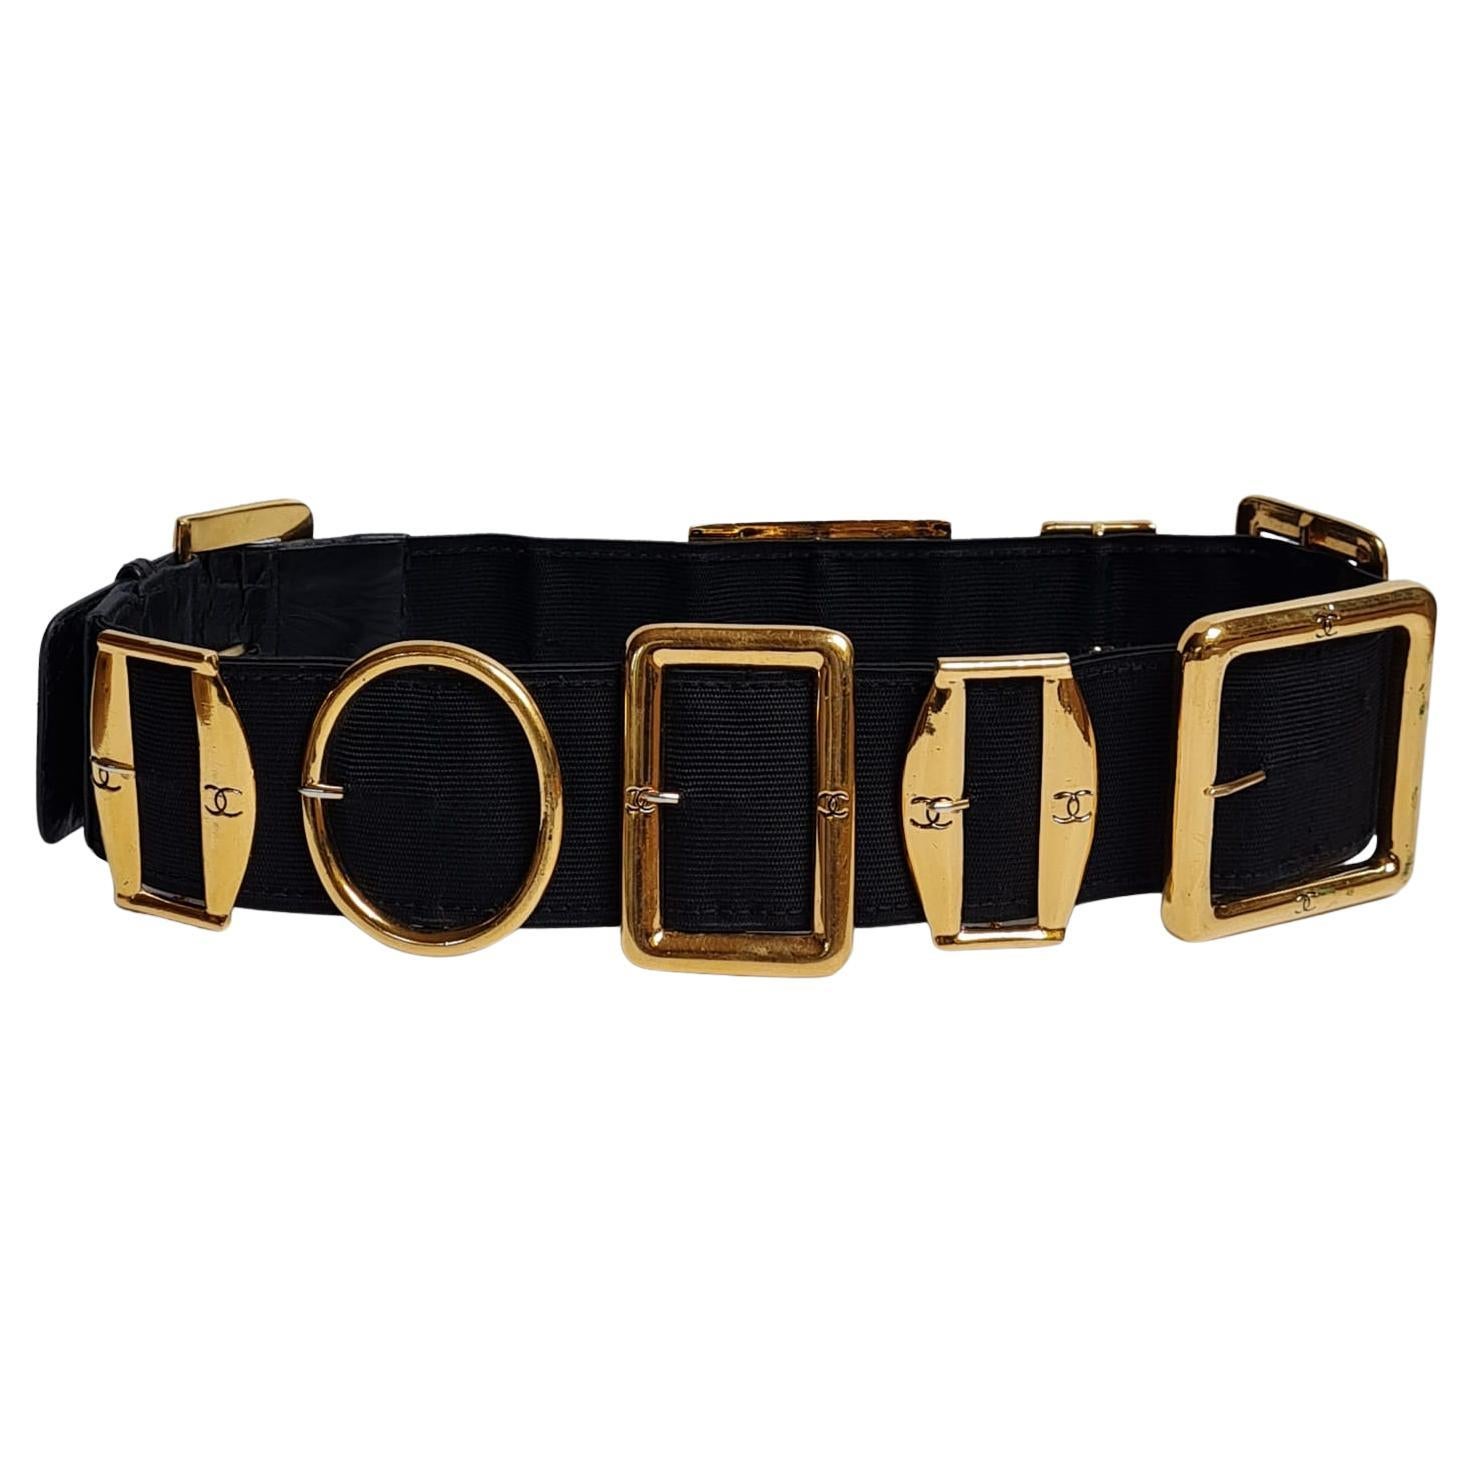 Rare 1990s Vintage Chanel Elastic Buckled Belt